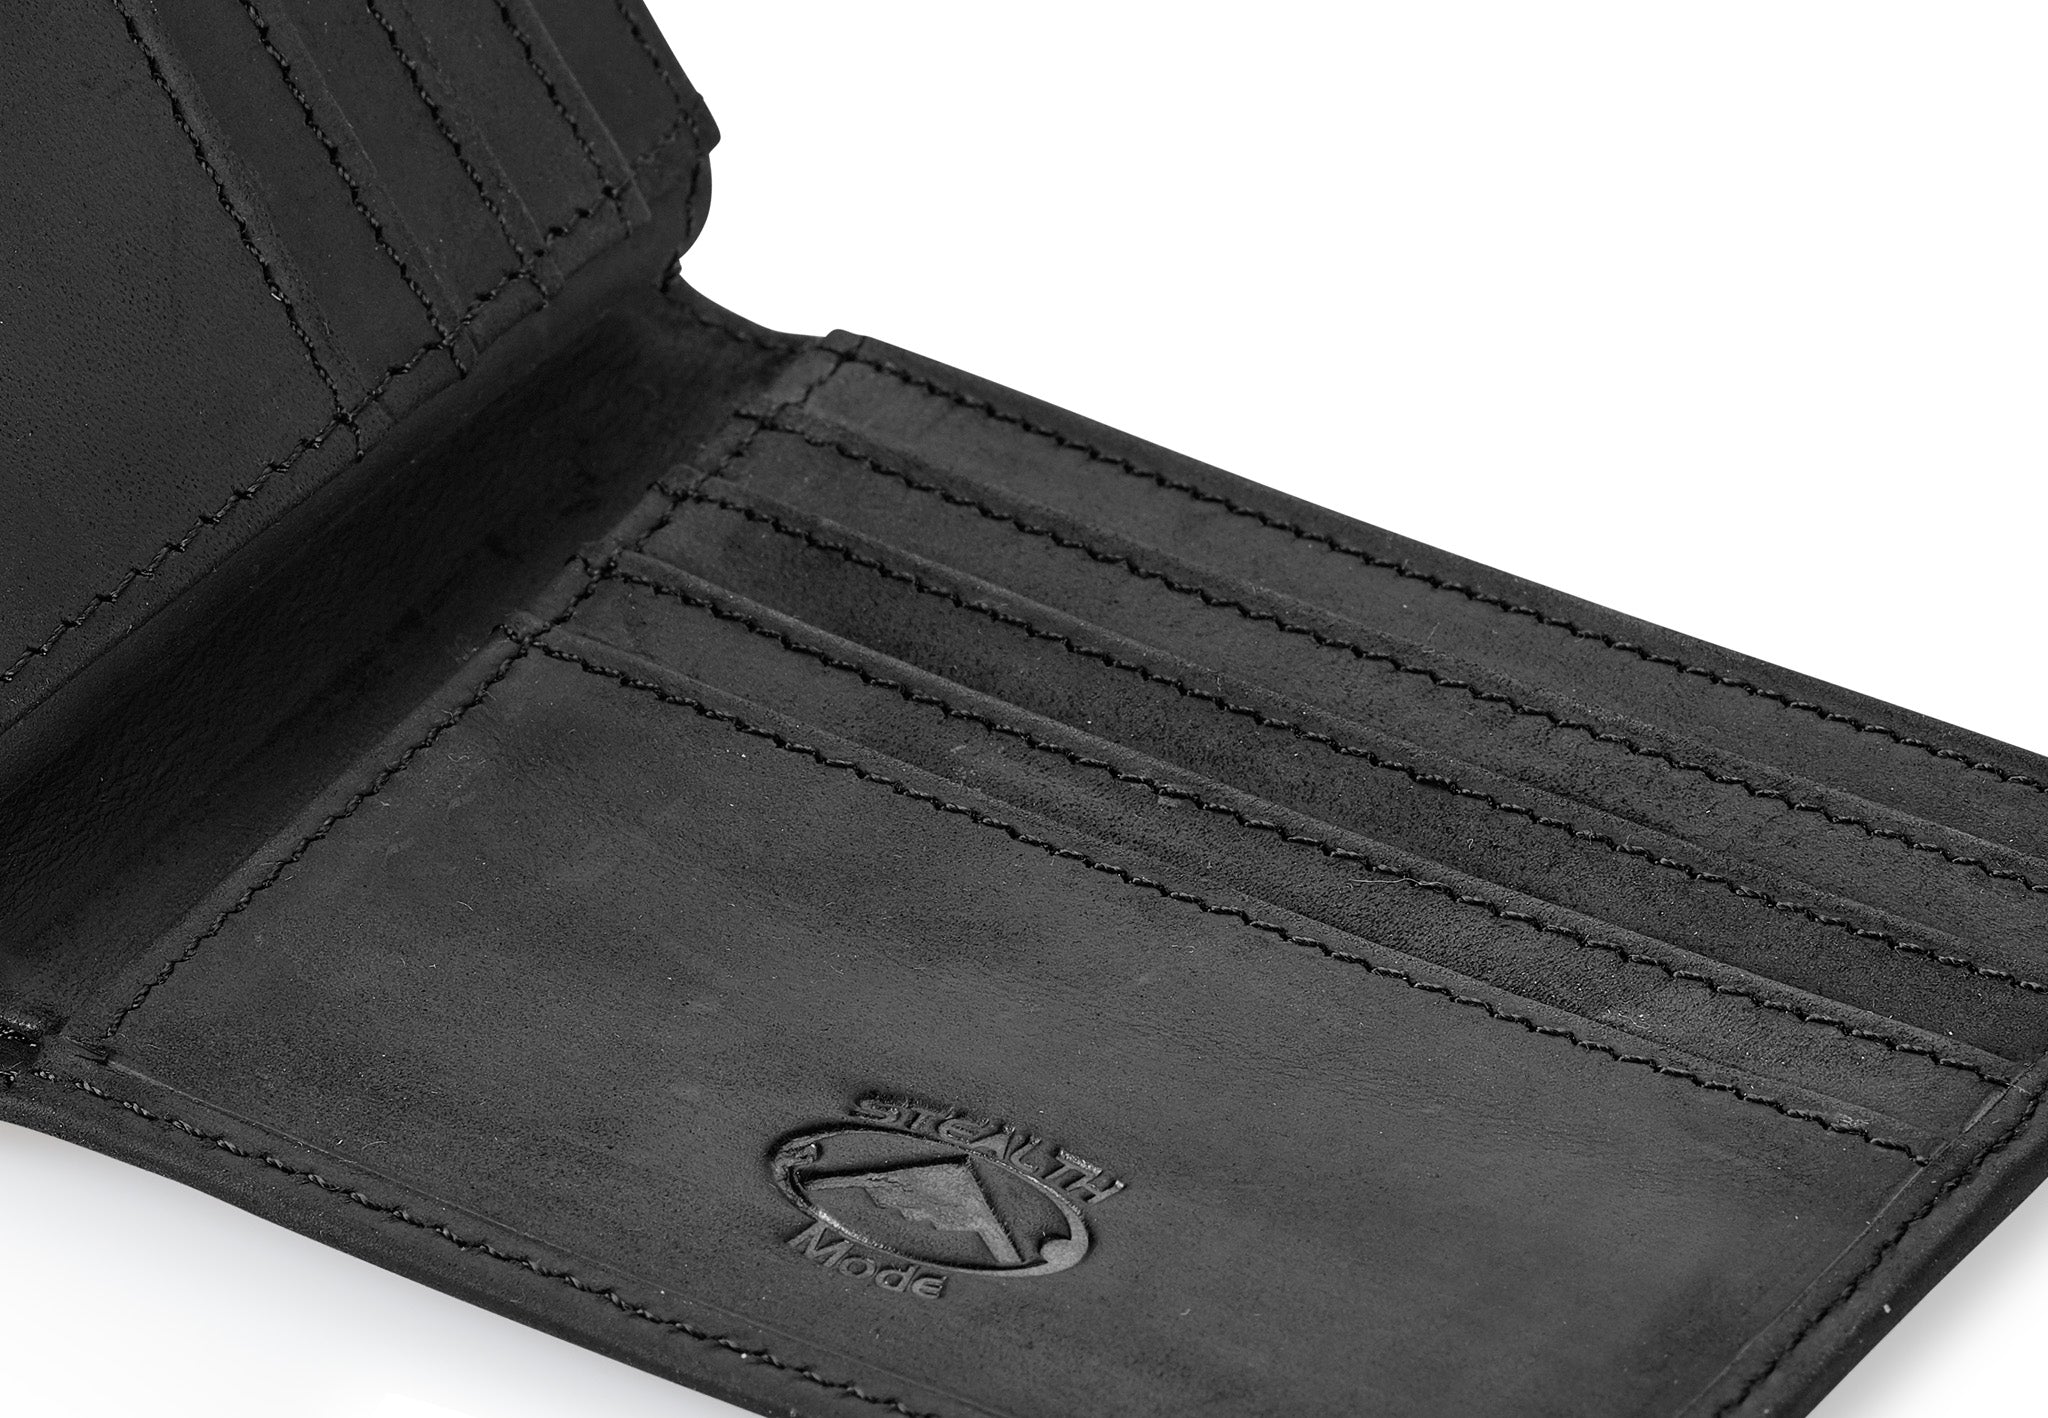 NEXTKIN Snap Button Leather RFID Blocking Minimalist Bifold Card Wallet,  Black